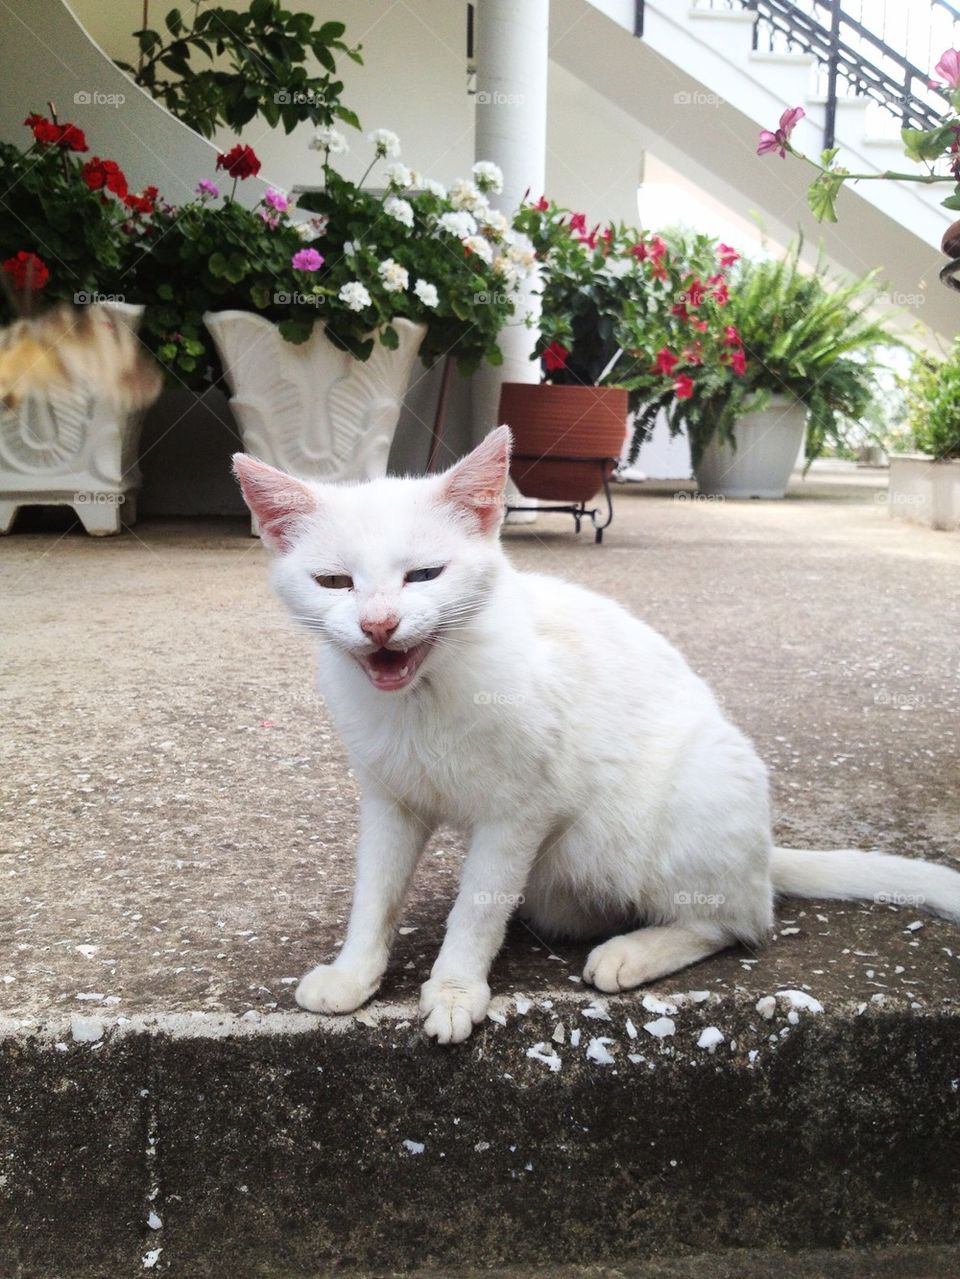 flowers white cat animal by aishhaa